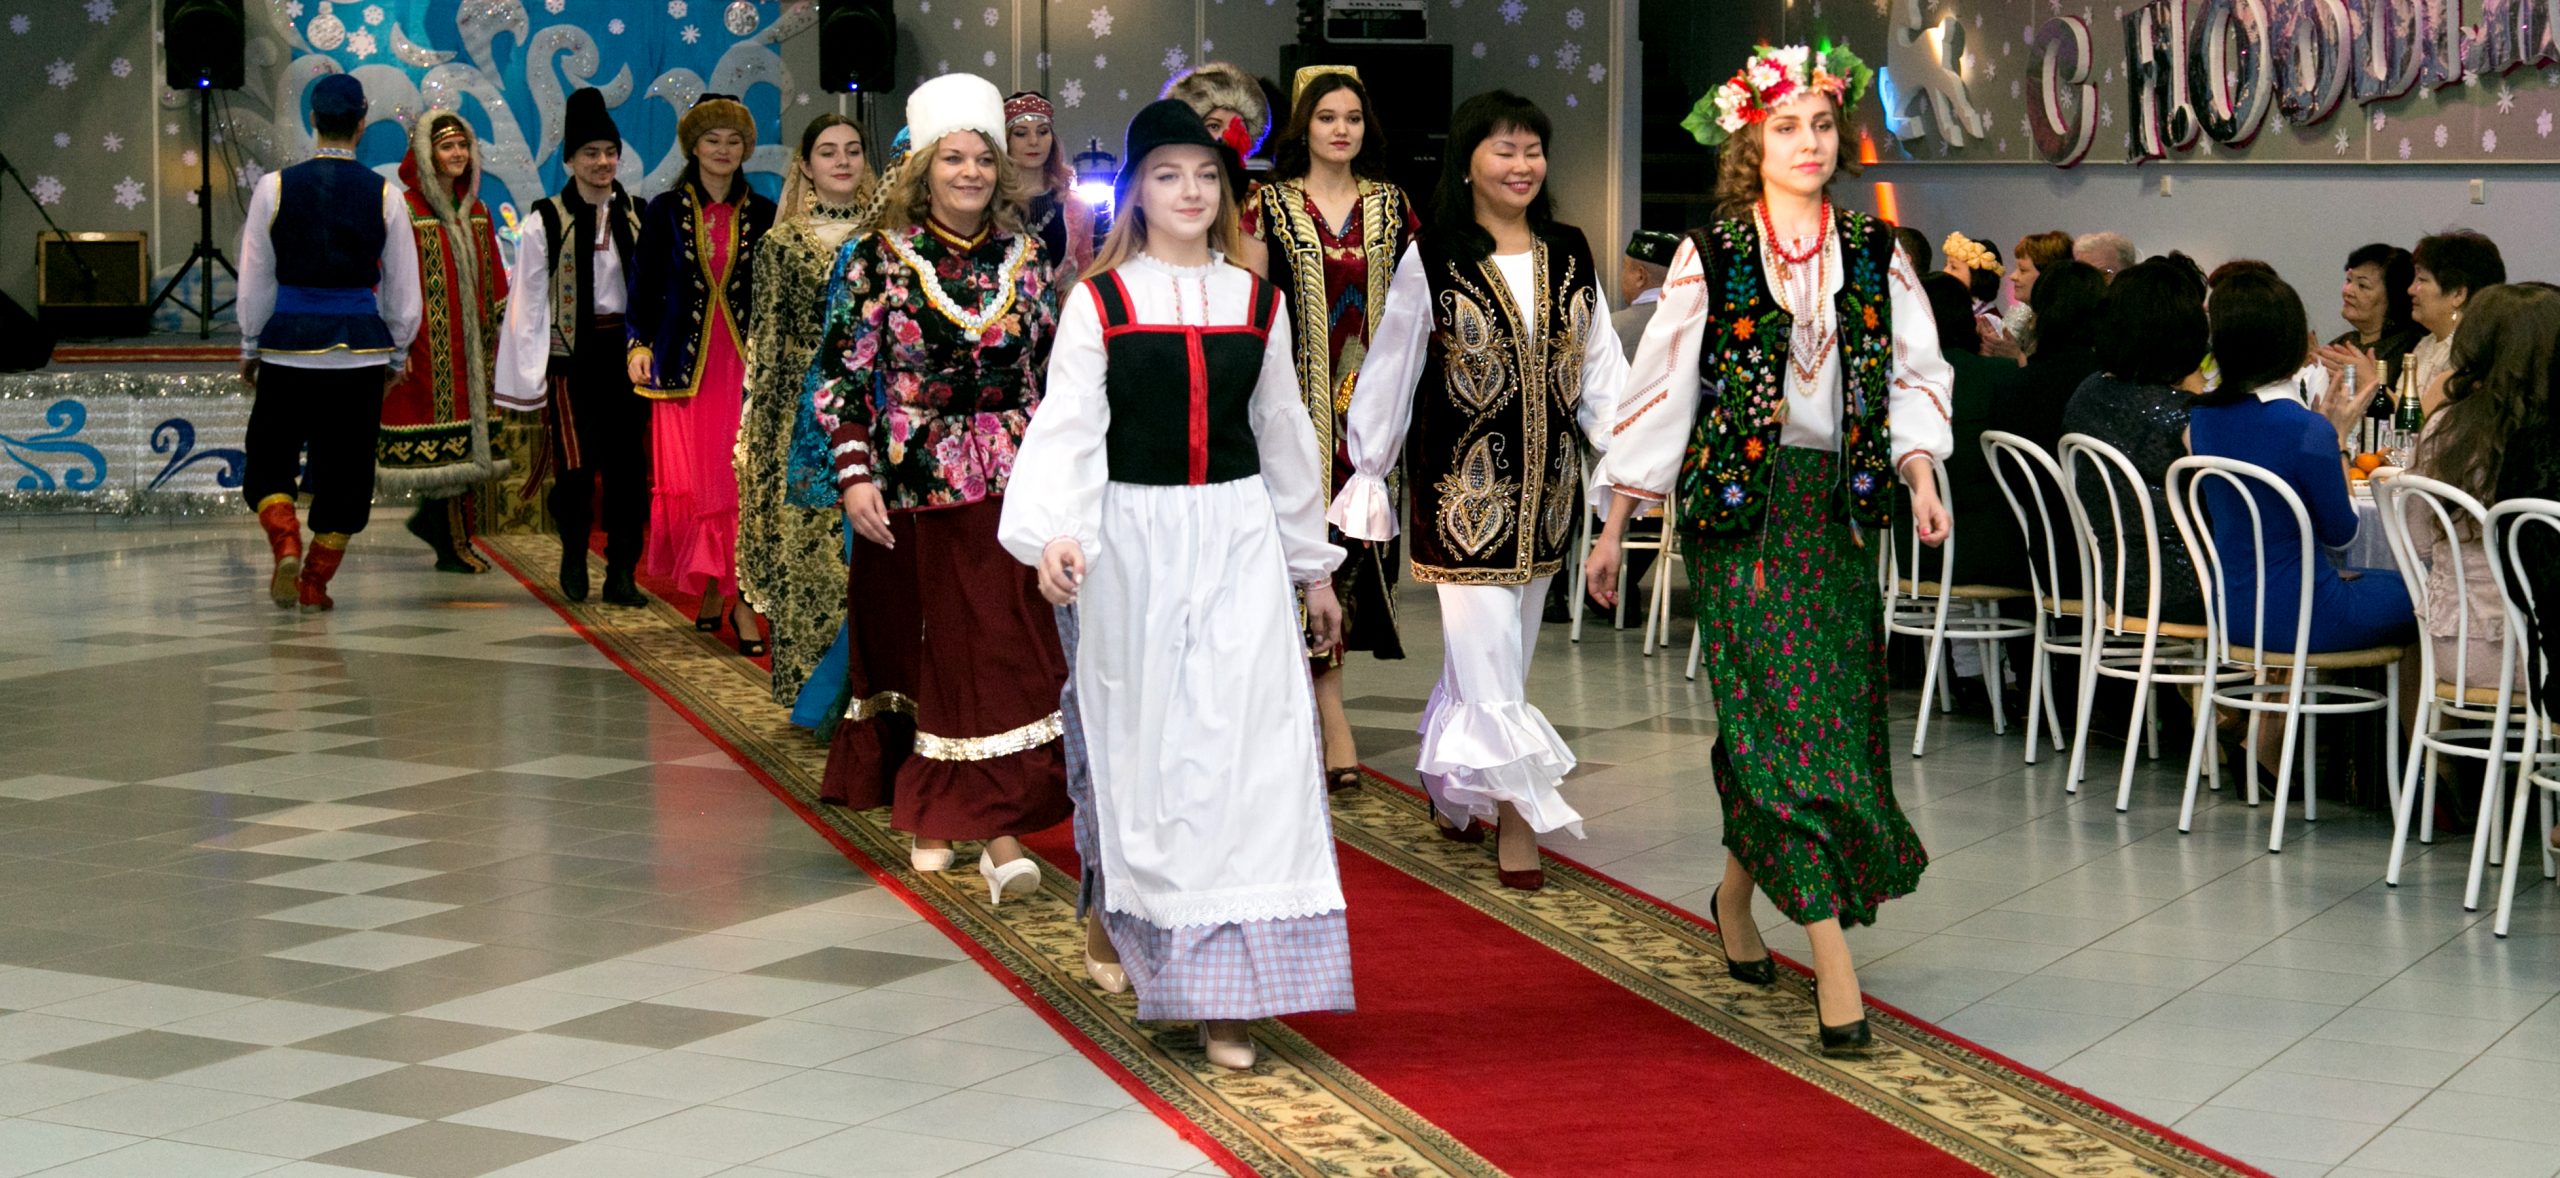 Театральный художник Юлия Гилязова: «Национальный костюм - это визуализация культуры народа»